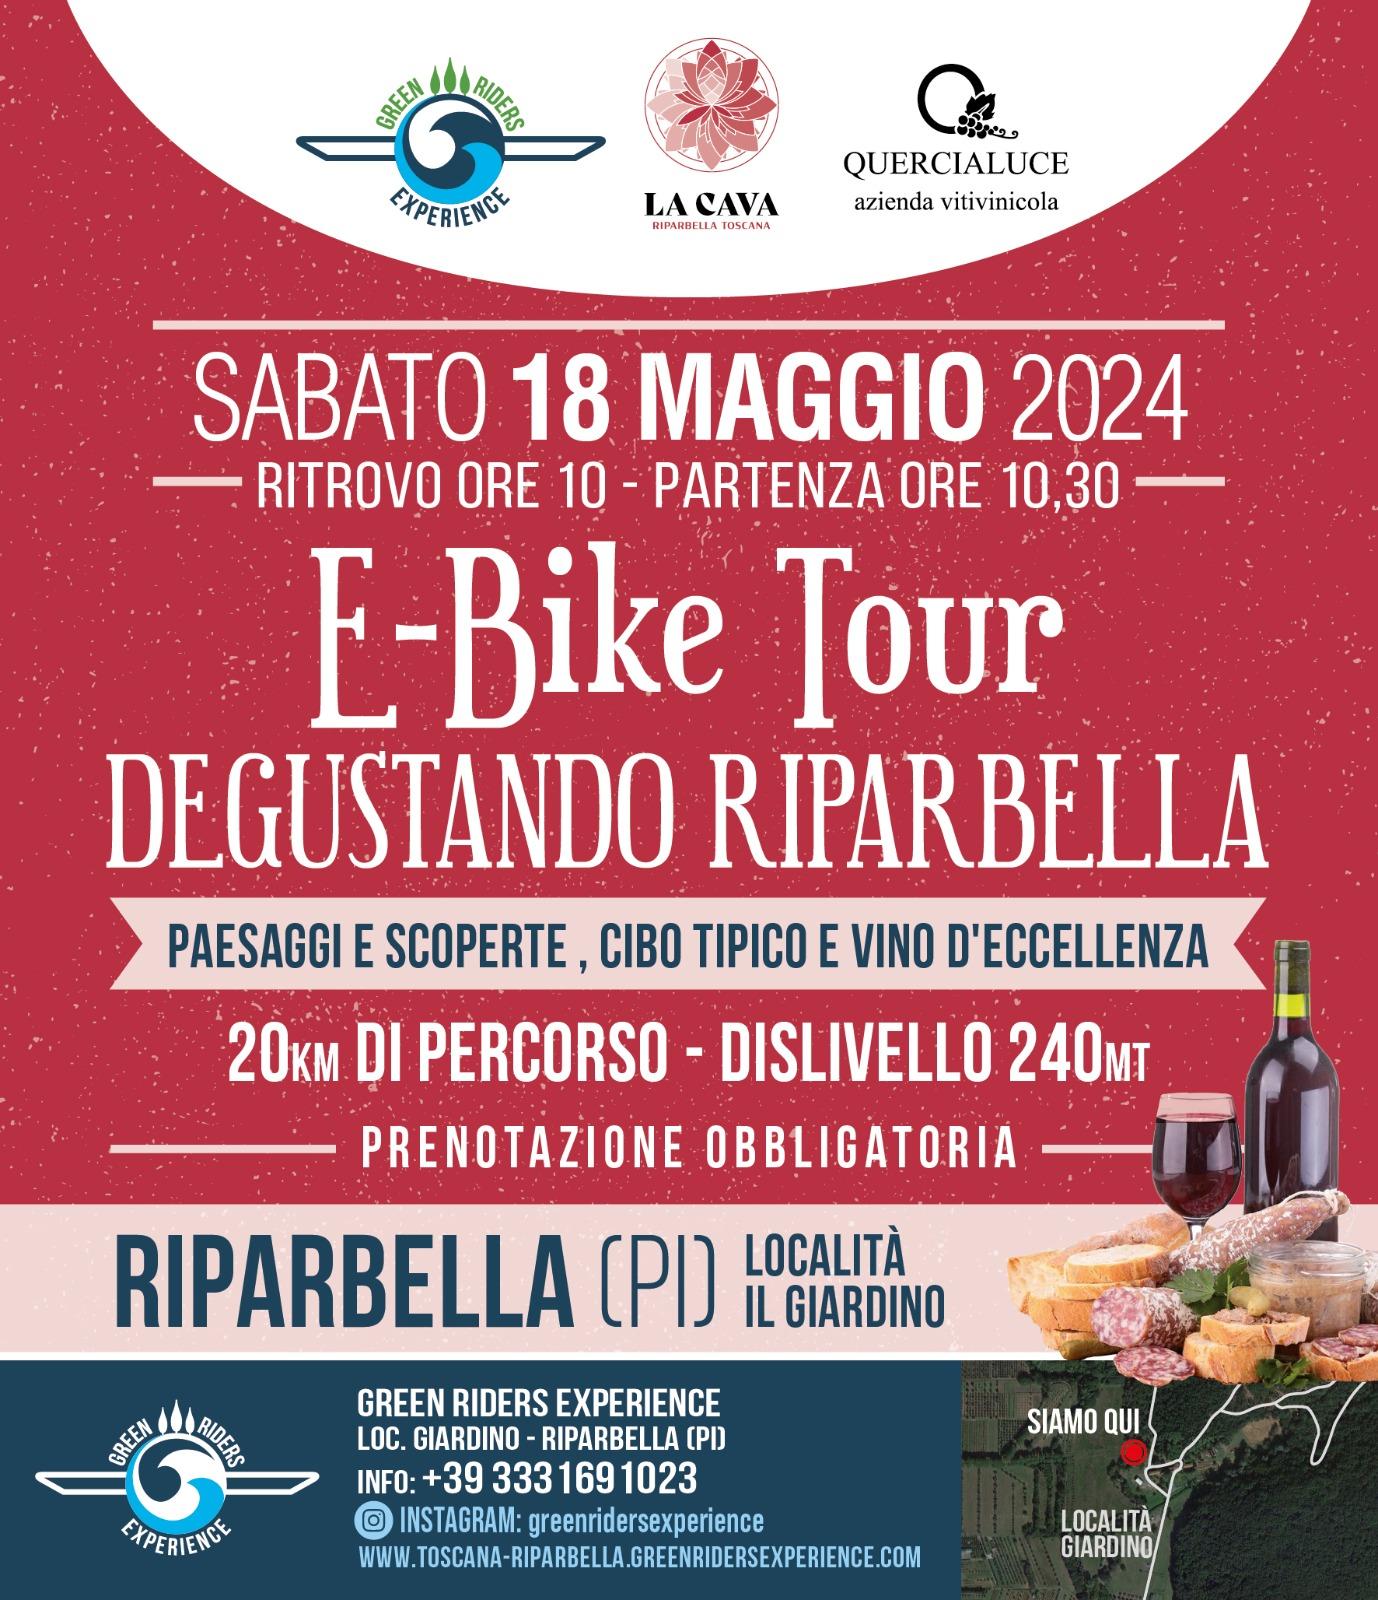 prenotazione Senza E-bike E-BIKE TOUR DEGUSTANDO RIPARBELLA TOUR ANELLO DEL VINO E DEL GUSTO SABATO 18 MAGGIO 2024